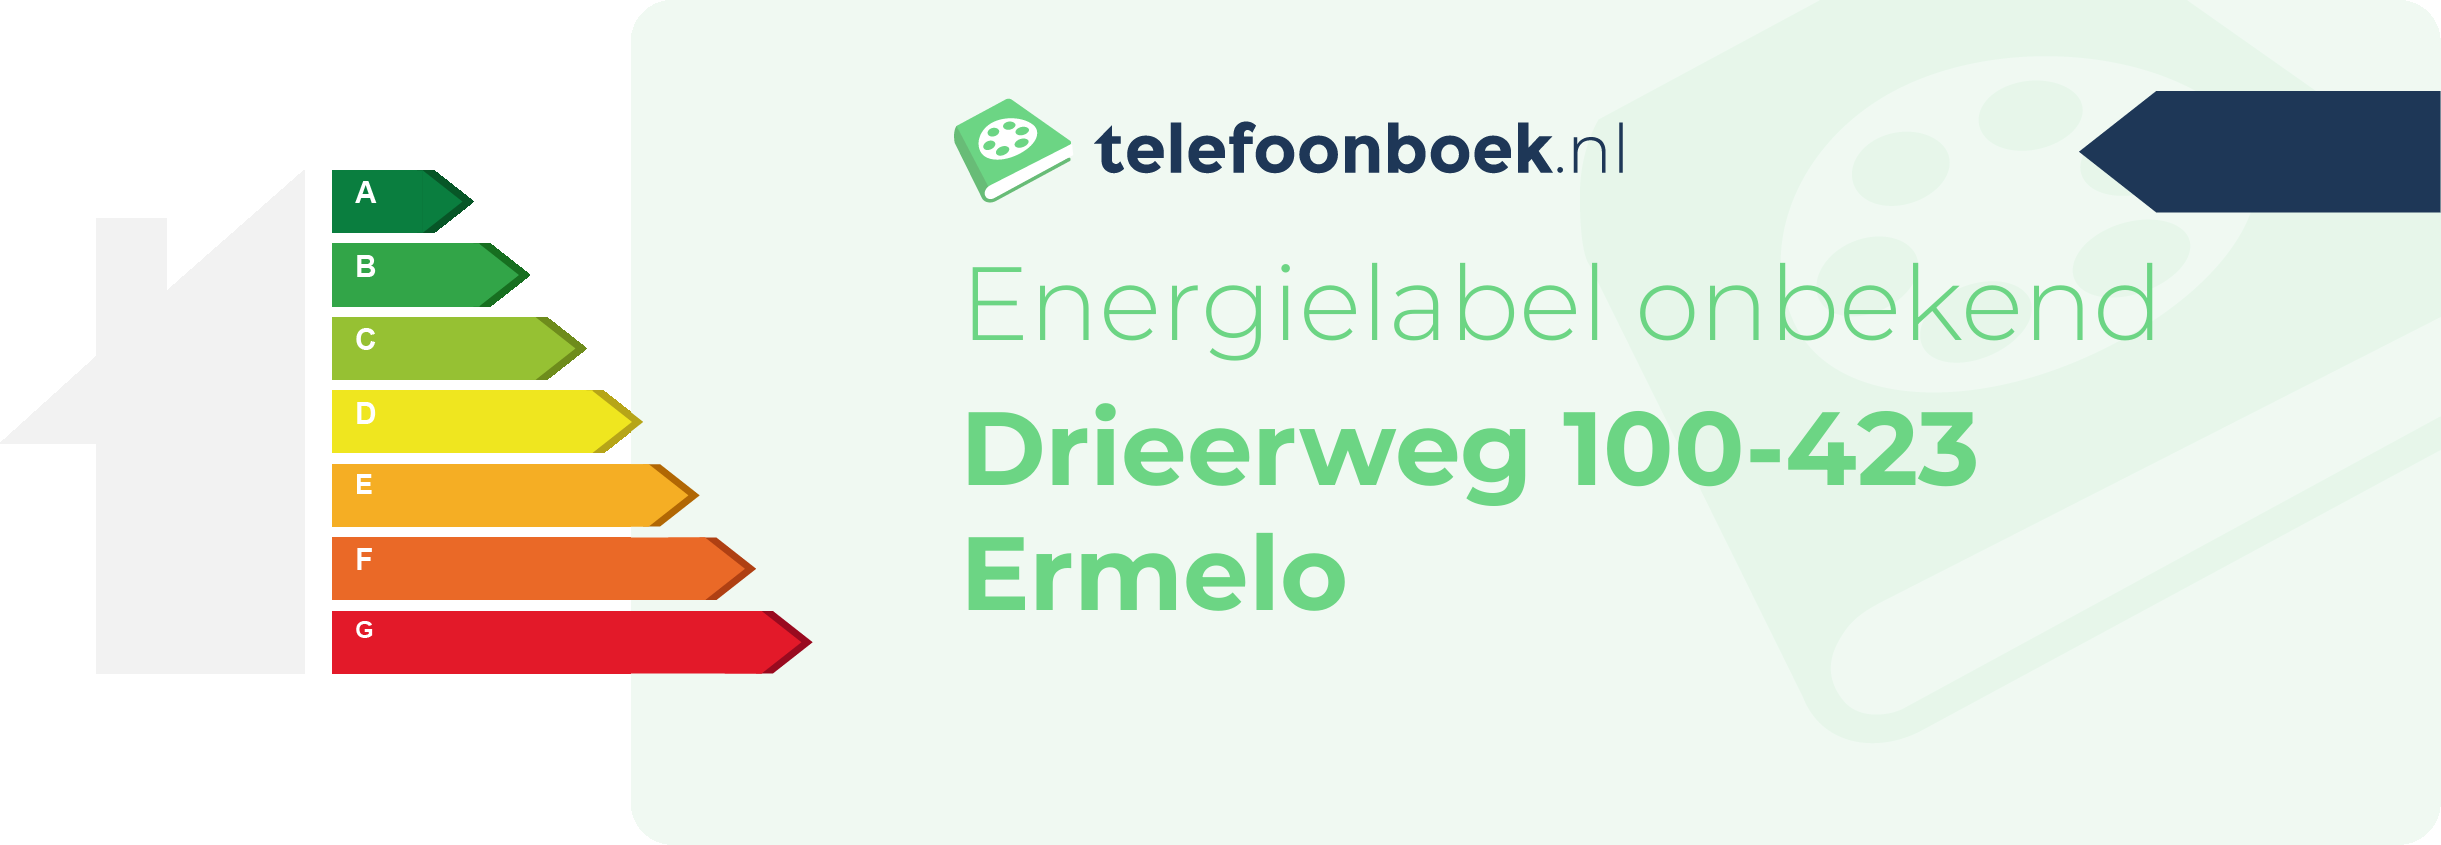 Energielabel Drieerweg 100-423 Ermelo